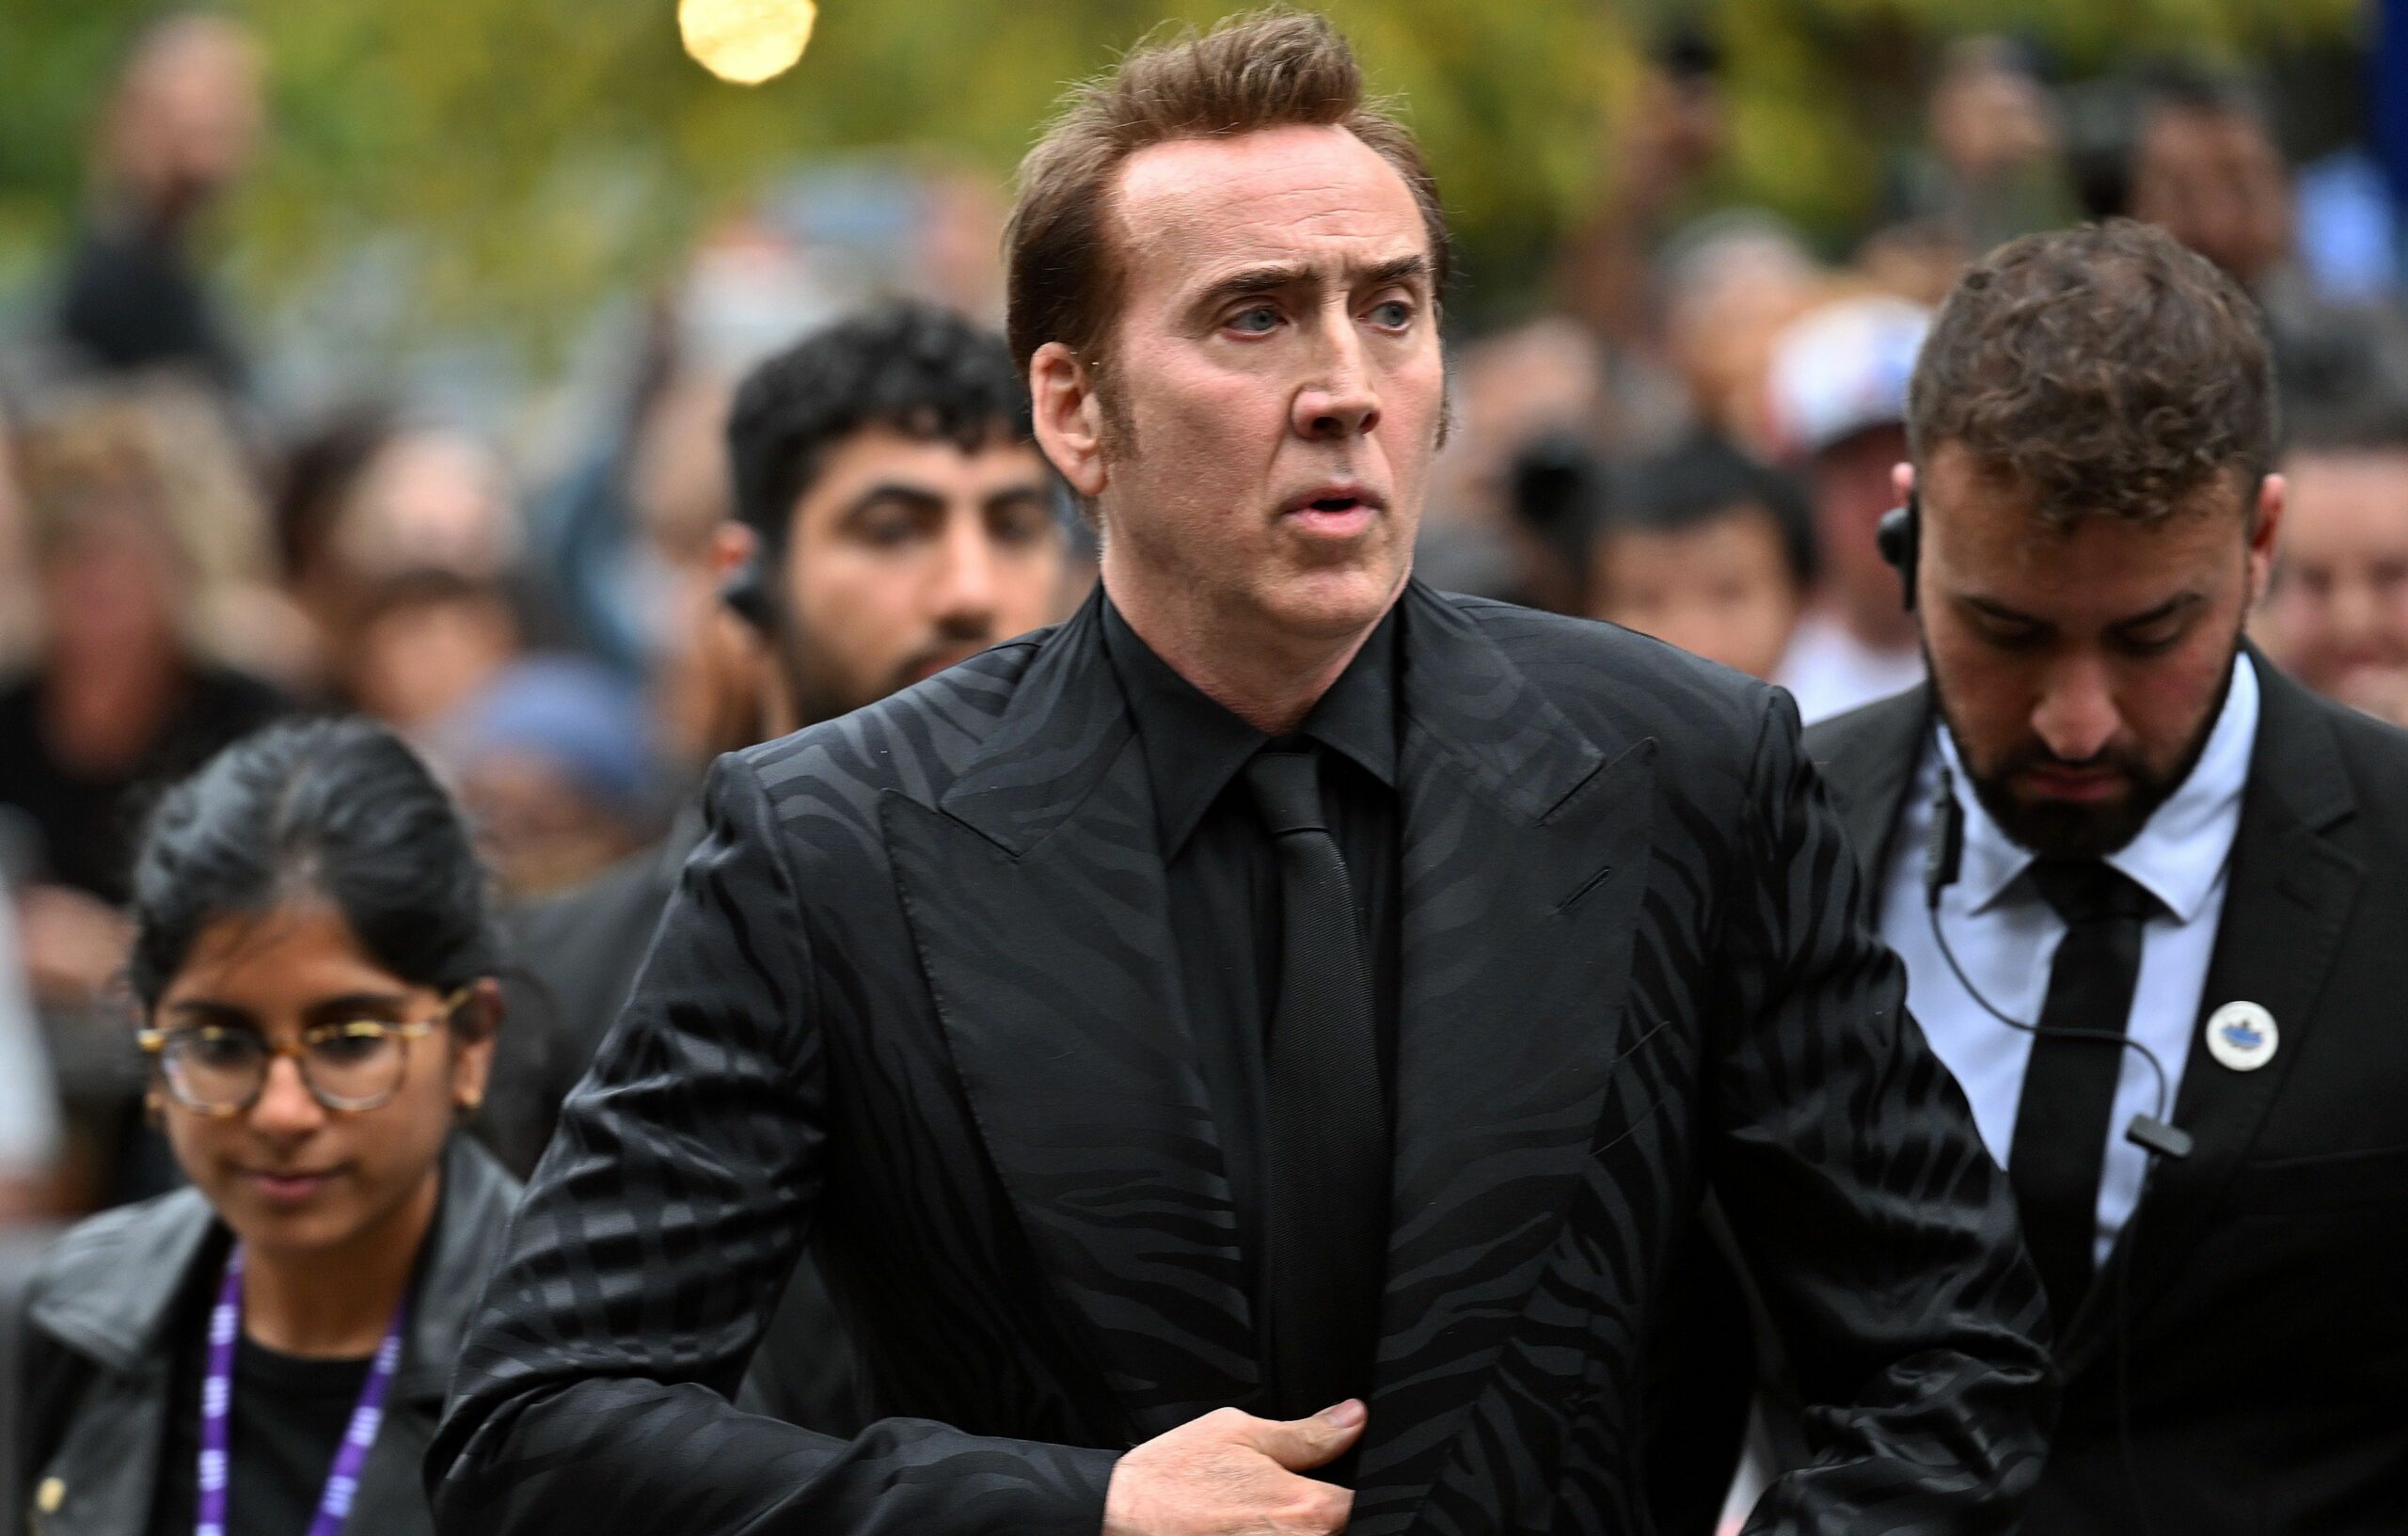 La interpretación de Nicolas Cage creada por Inteligencia Artificial: “No hice eso”